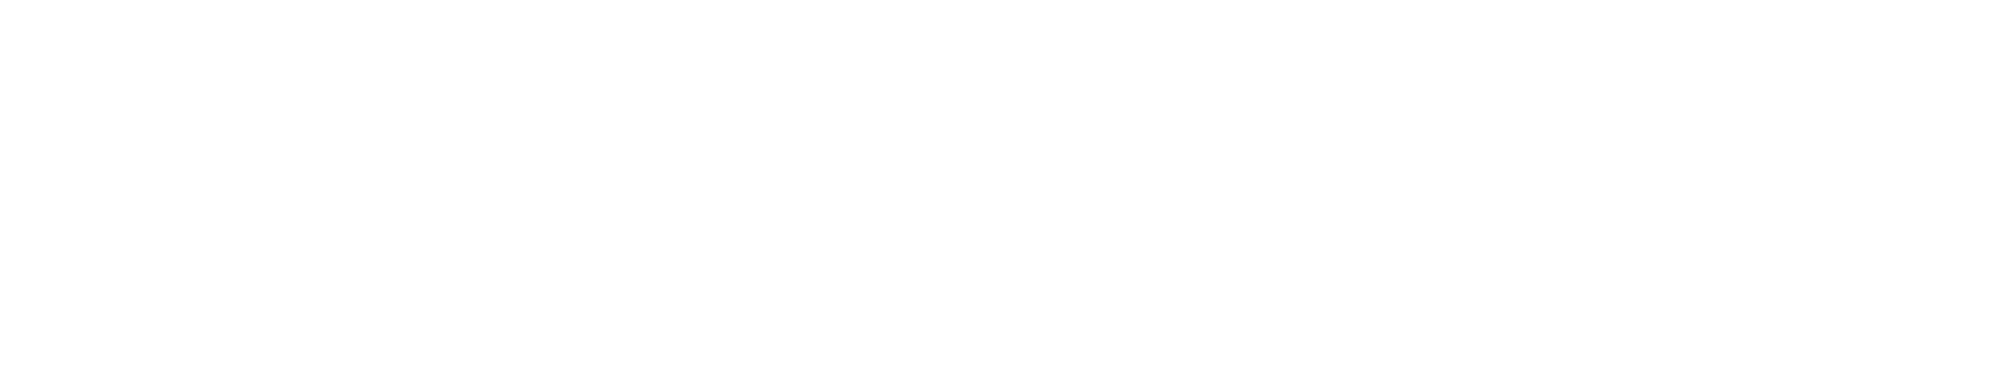 wolf_creek_ranch_logo_white